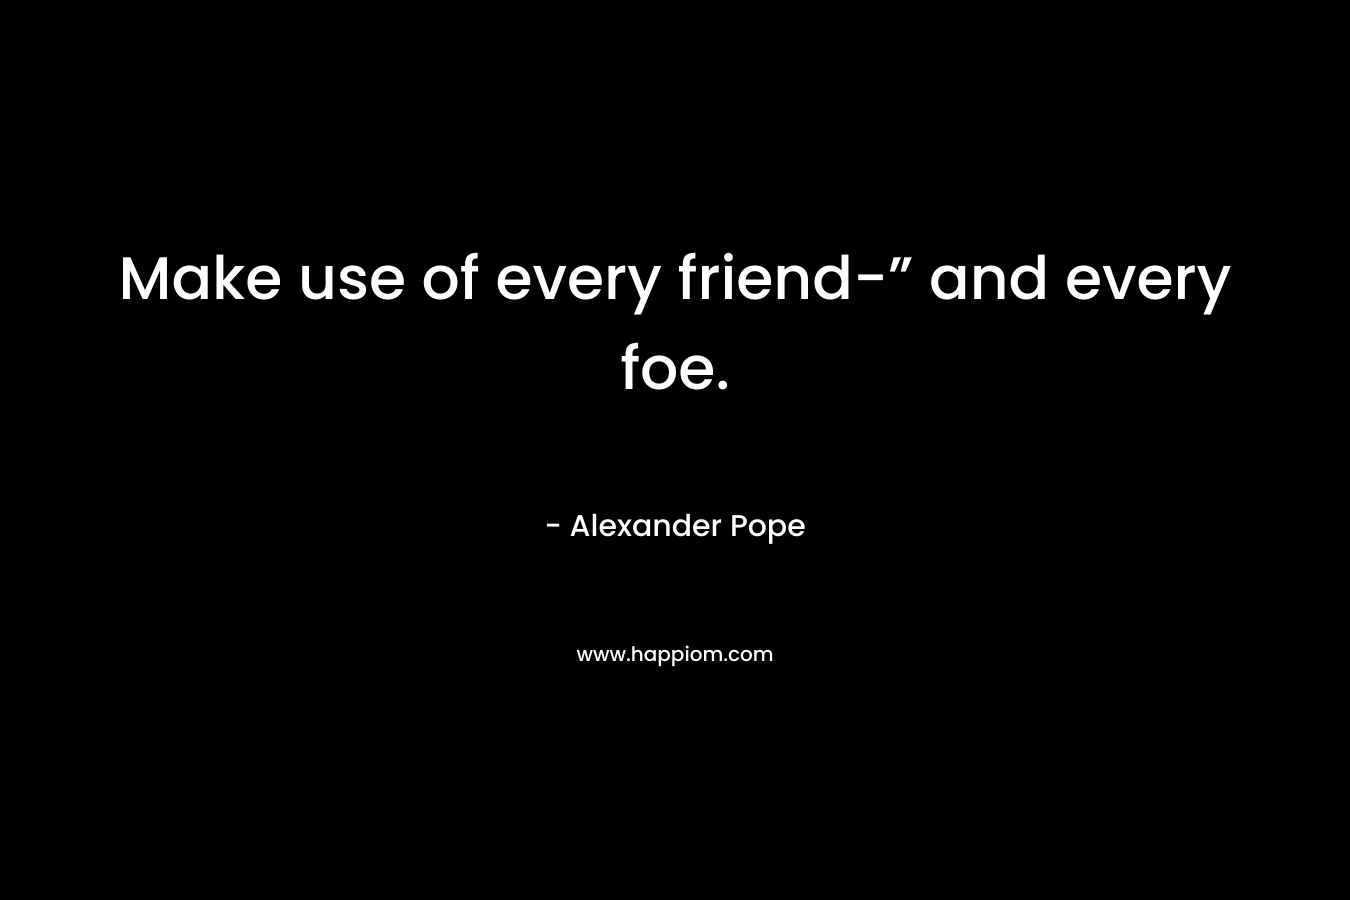 Make use of every friend-” and every foe.